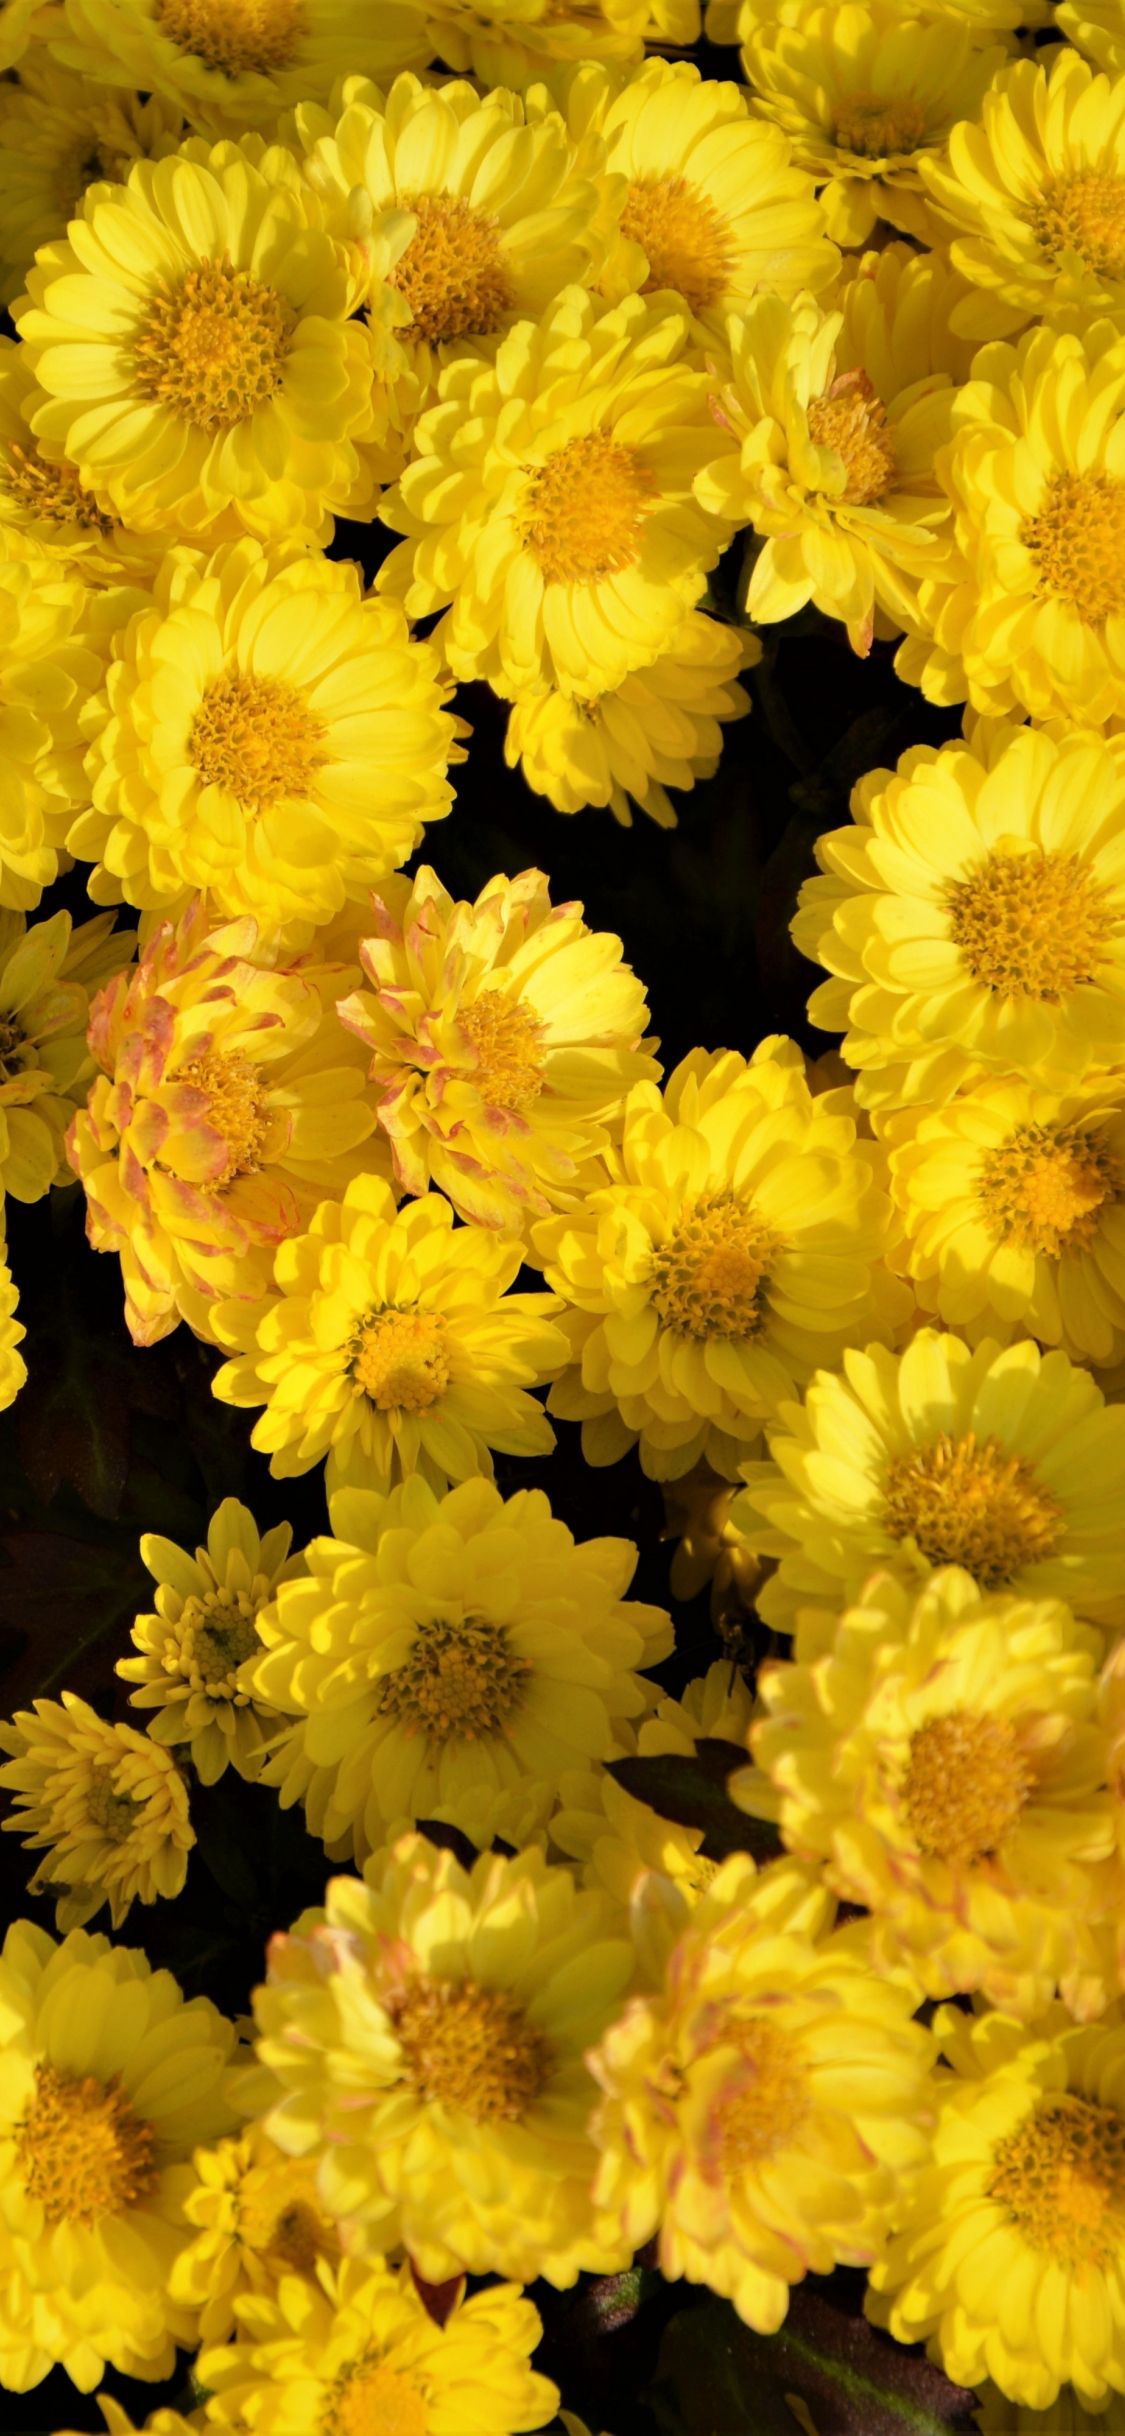 Download 1125x2436 wallpapers yellow flowers, arrangement, iphone x